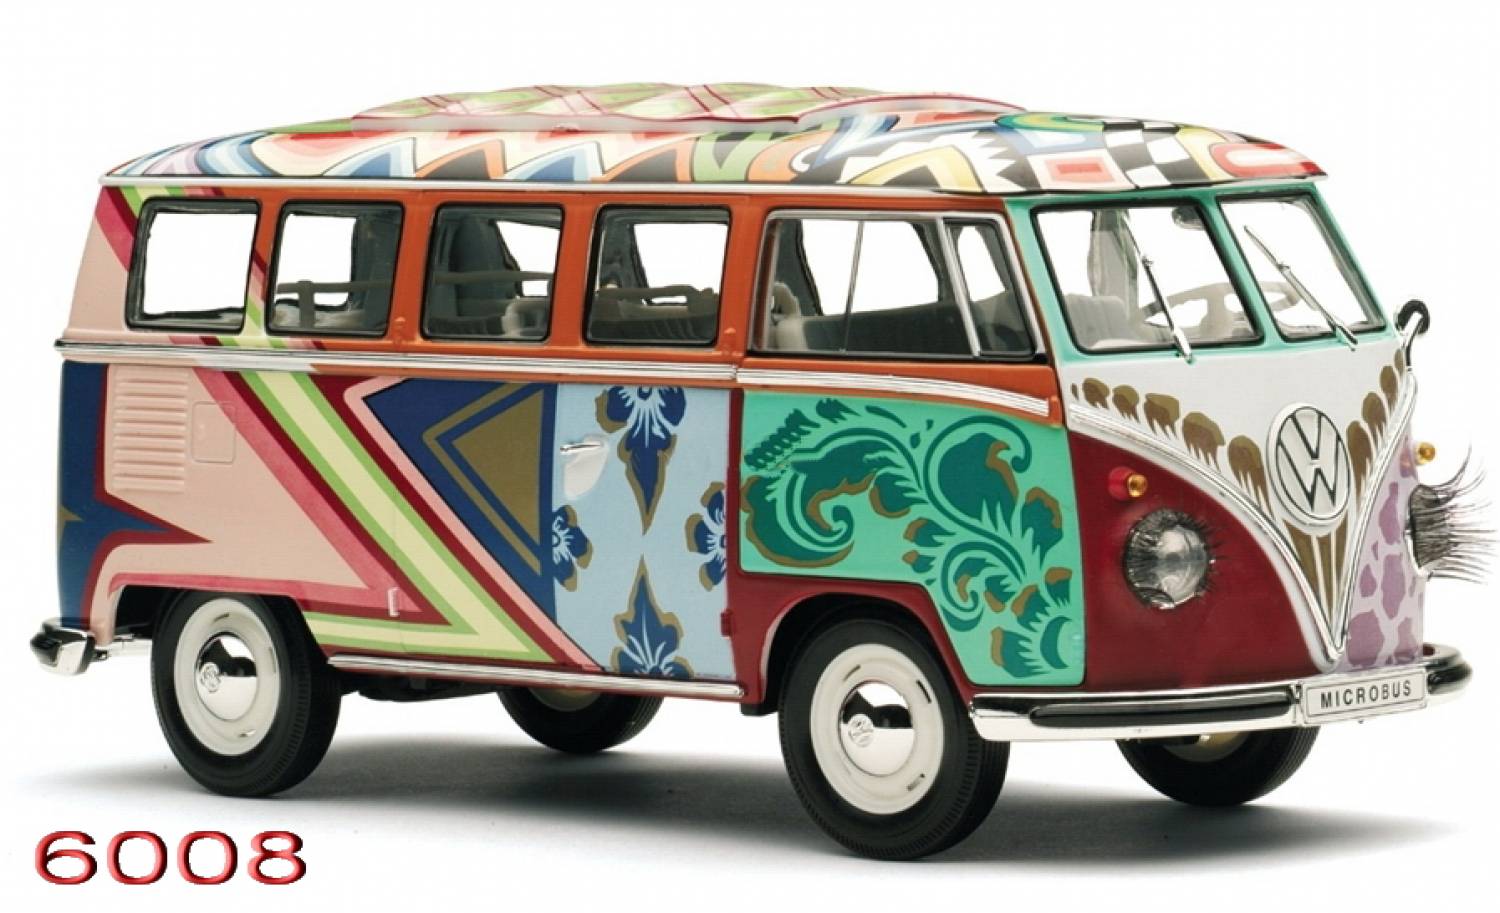 vw combi van hd desktop wallpapers volkswagen hippie bus 1500x913